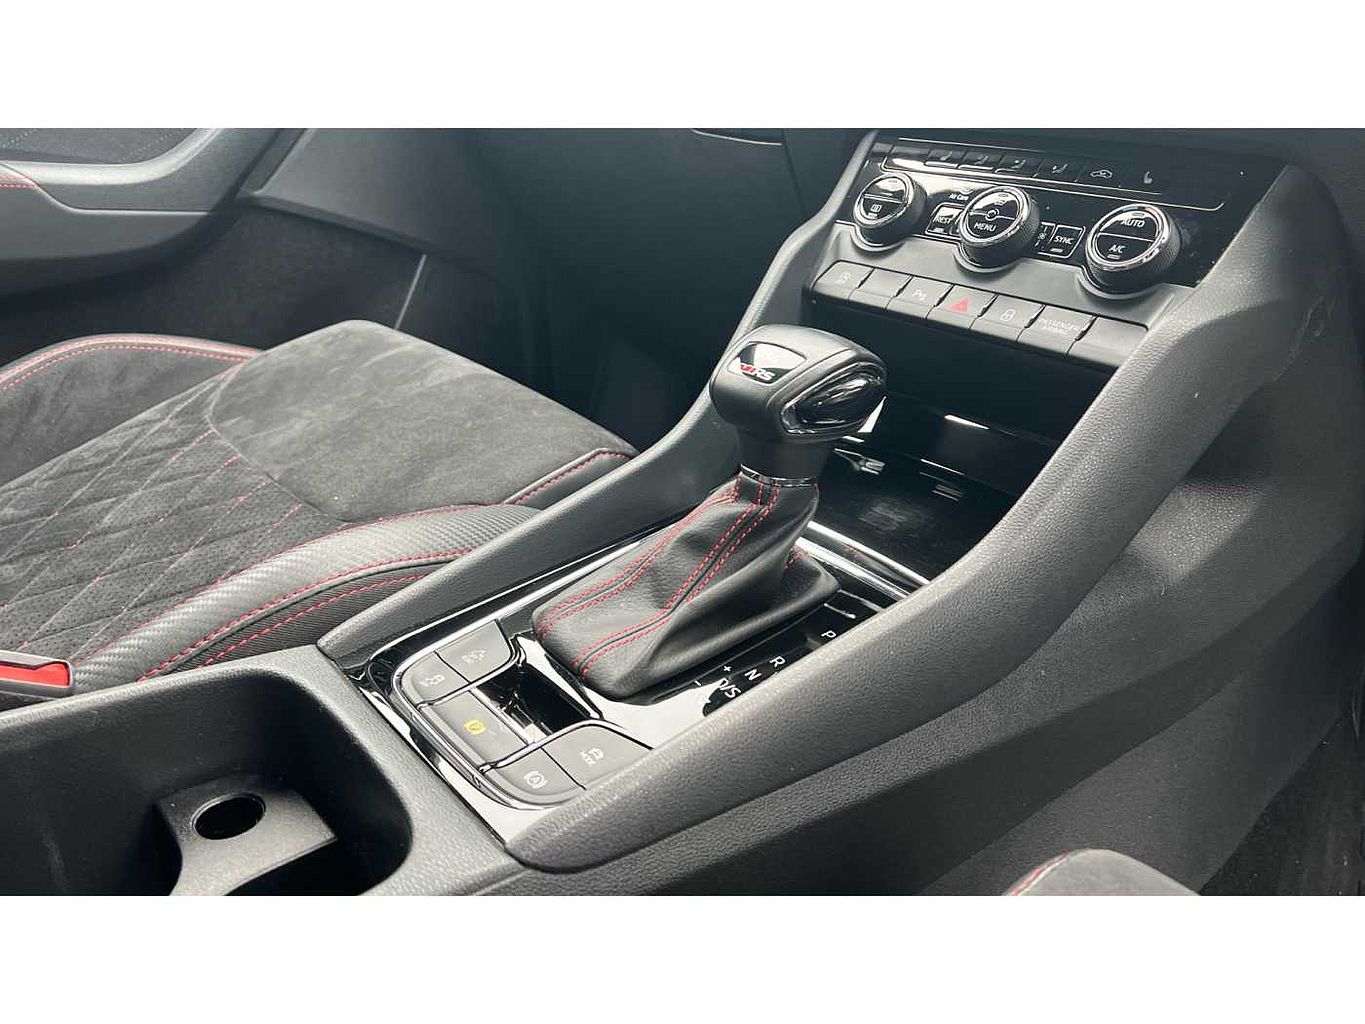 SKODA Kodiaq 2.0 BiTDI (239ps) 4X4 vRS (7 seats) DSG SUV